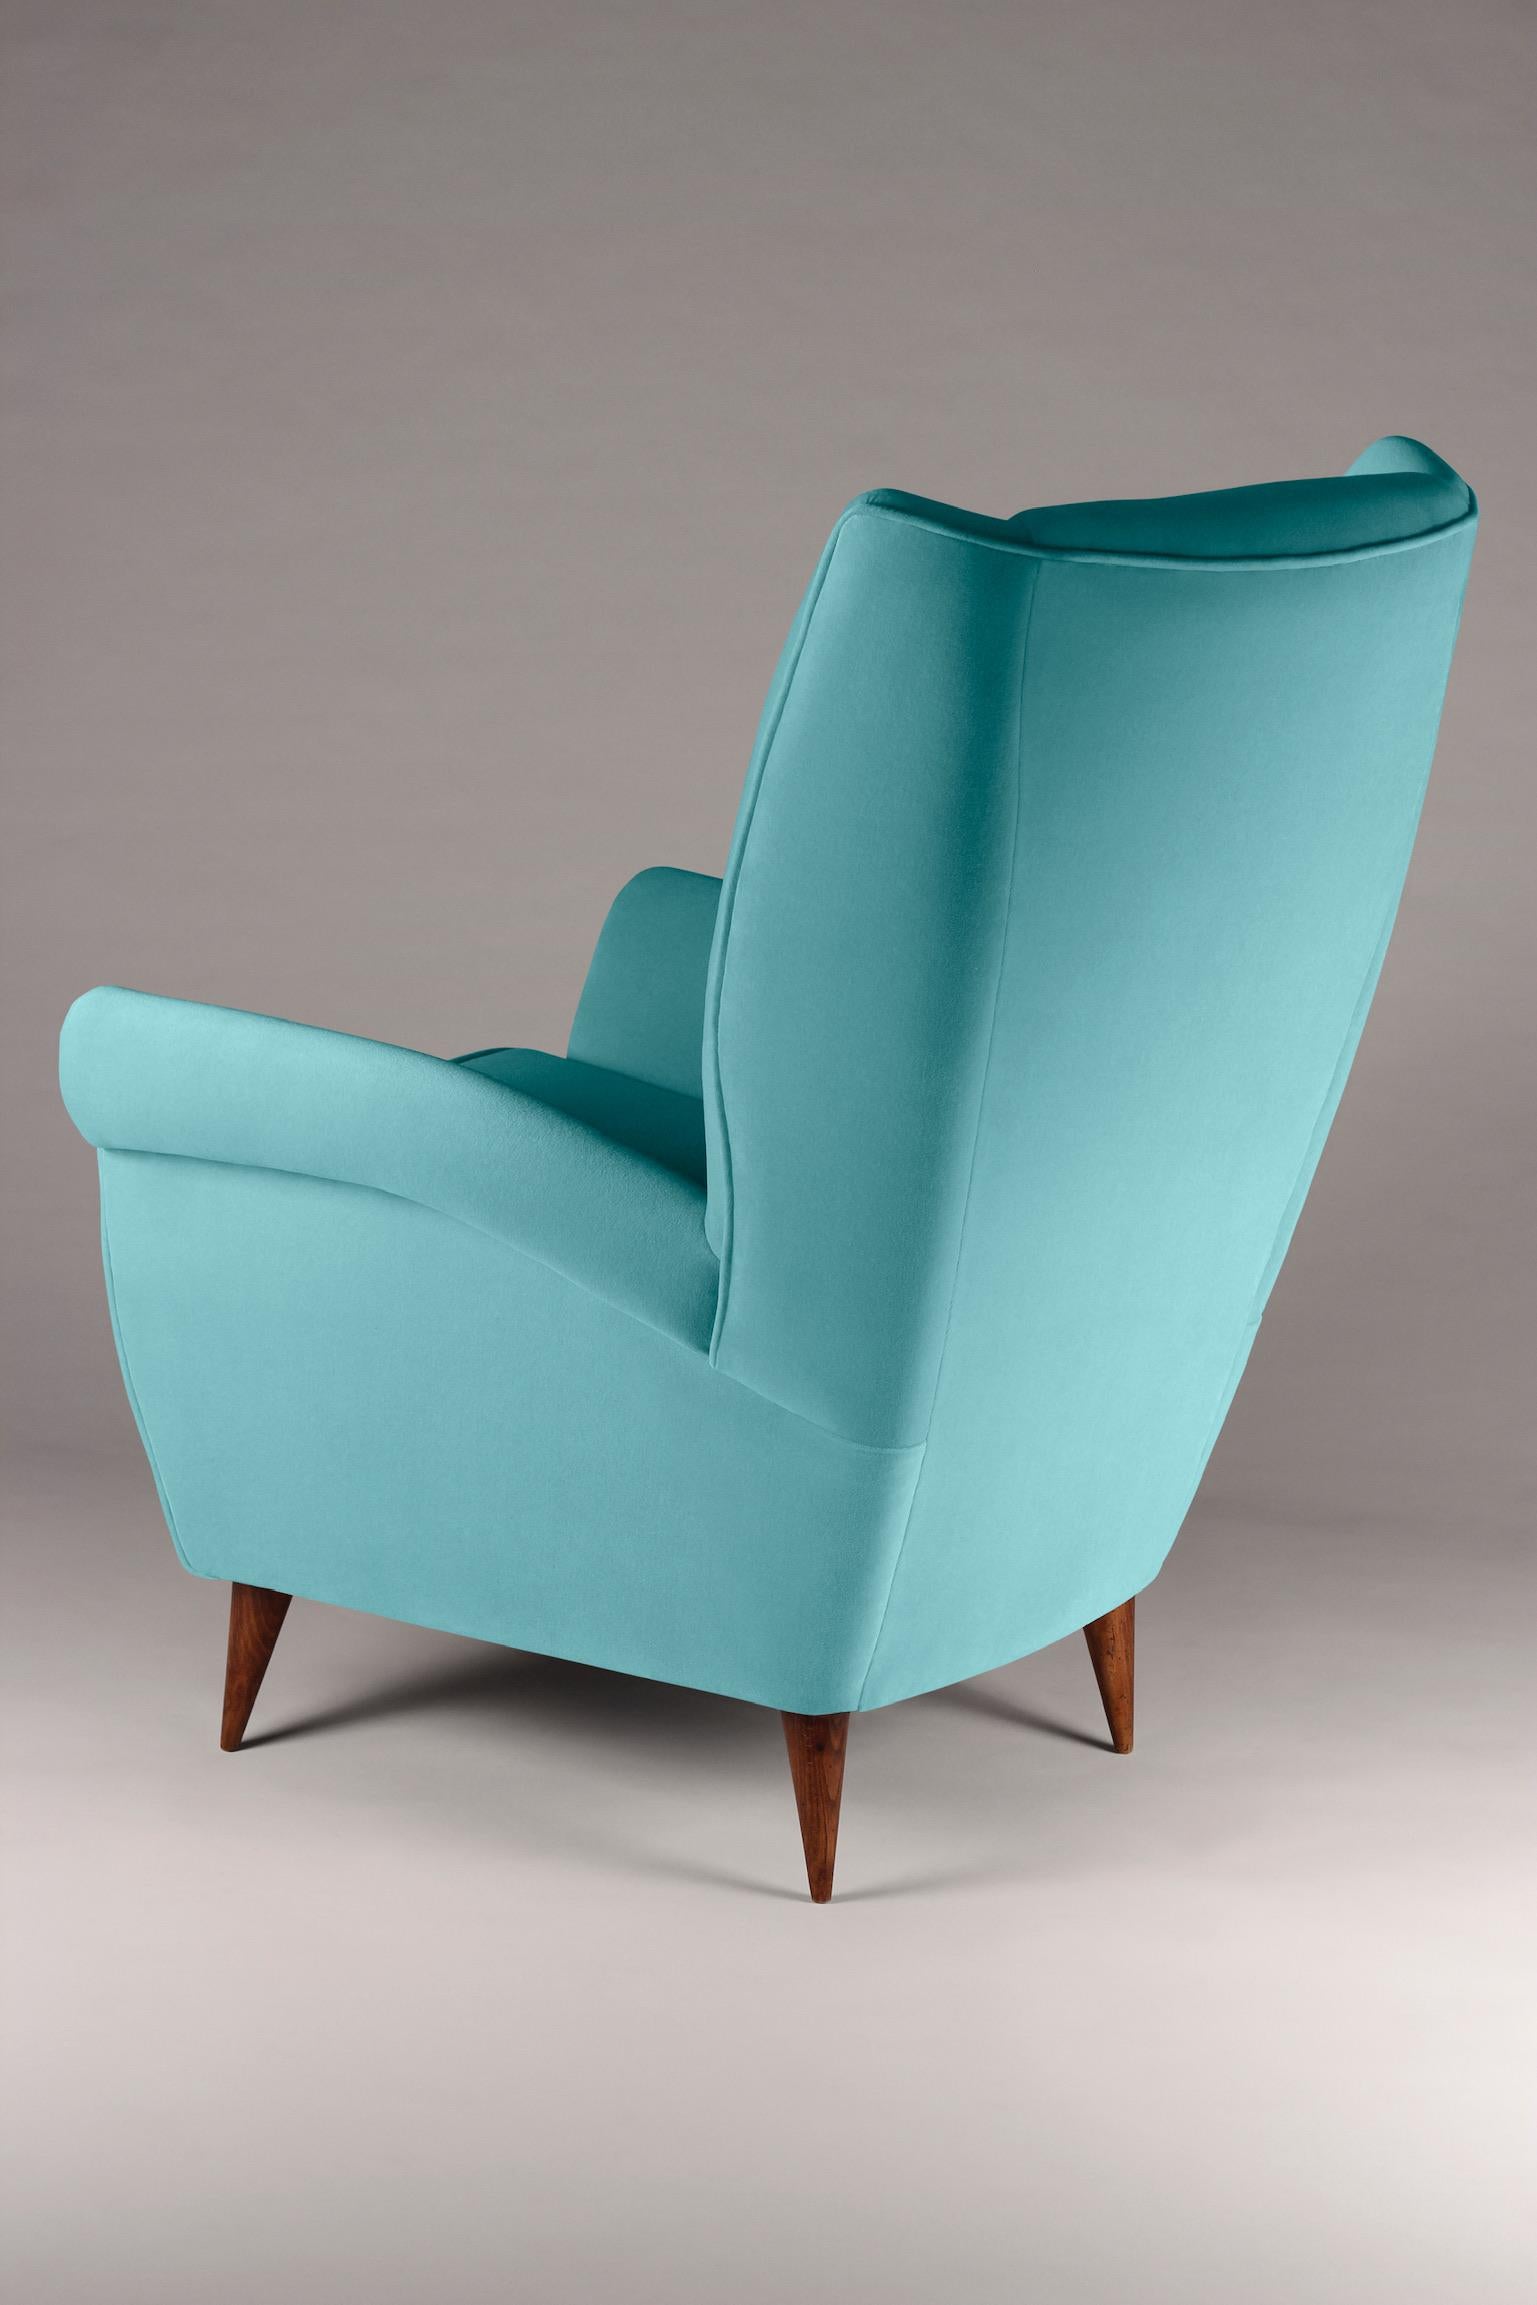 Der Loungesessel 'Marcello' mit hoher Rückenlehne wurde vom stilvollen italienischen Design der 1950er Jahre inspiriert und wird nun von englischen Handwerkern für das 21. Wir haben einen Loungesessel entwickelt, der in beliebiger Anzahl nach Ihren